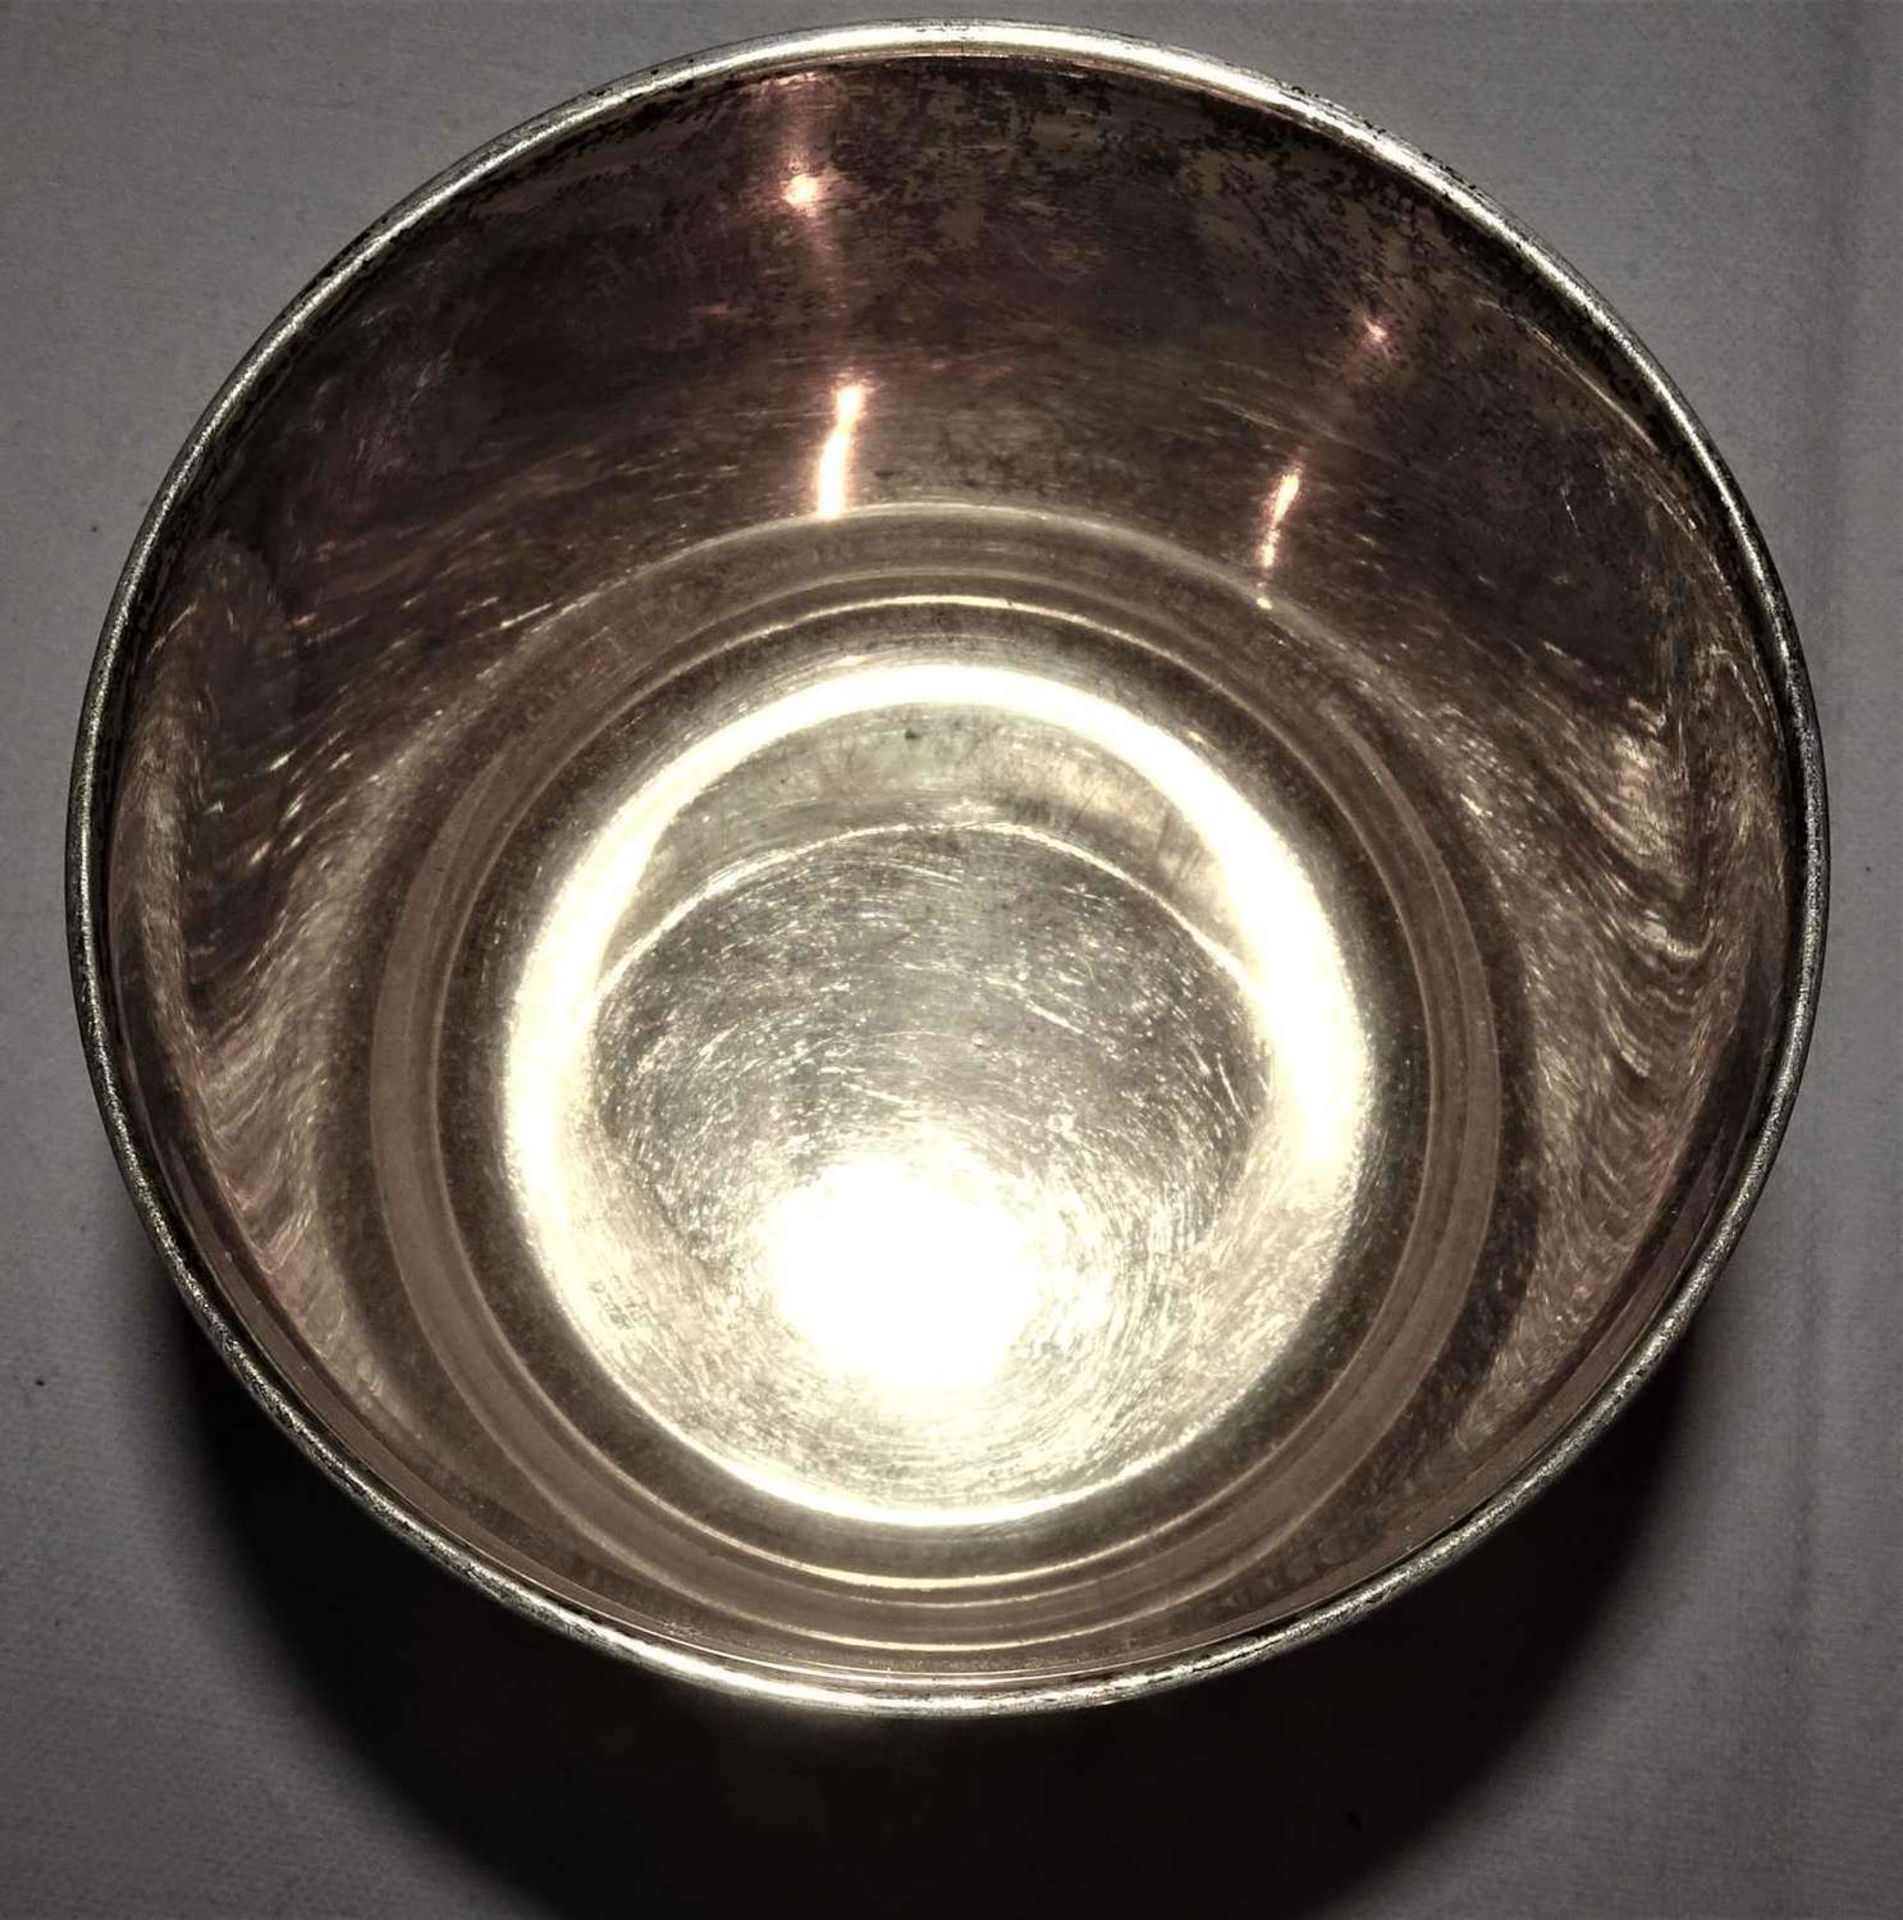 Trinkwappenbecher, 925er Silber, Innen vergoldet. Mehrfach gepunzt. Höhe ca. 6 cm, Durchmesser ca. - Bild 4 aus 5